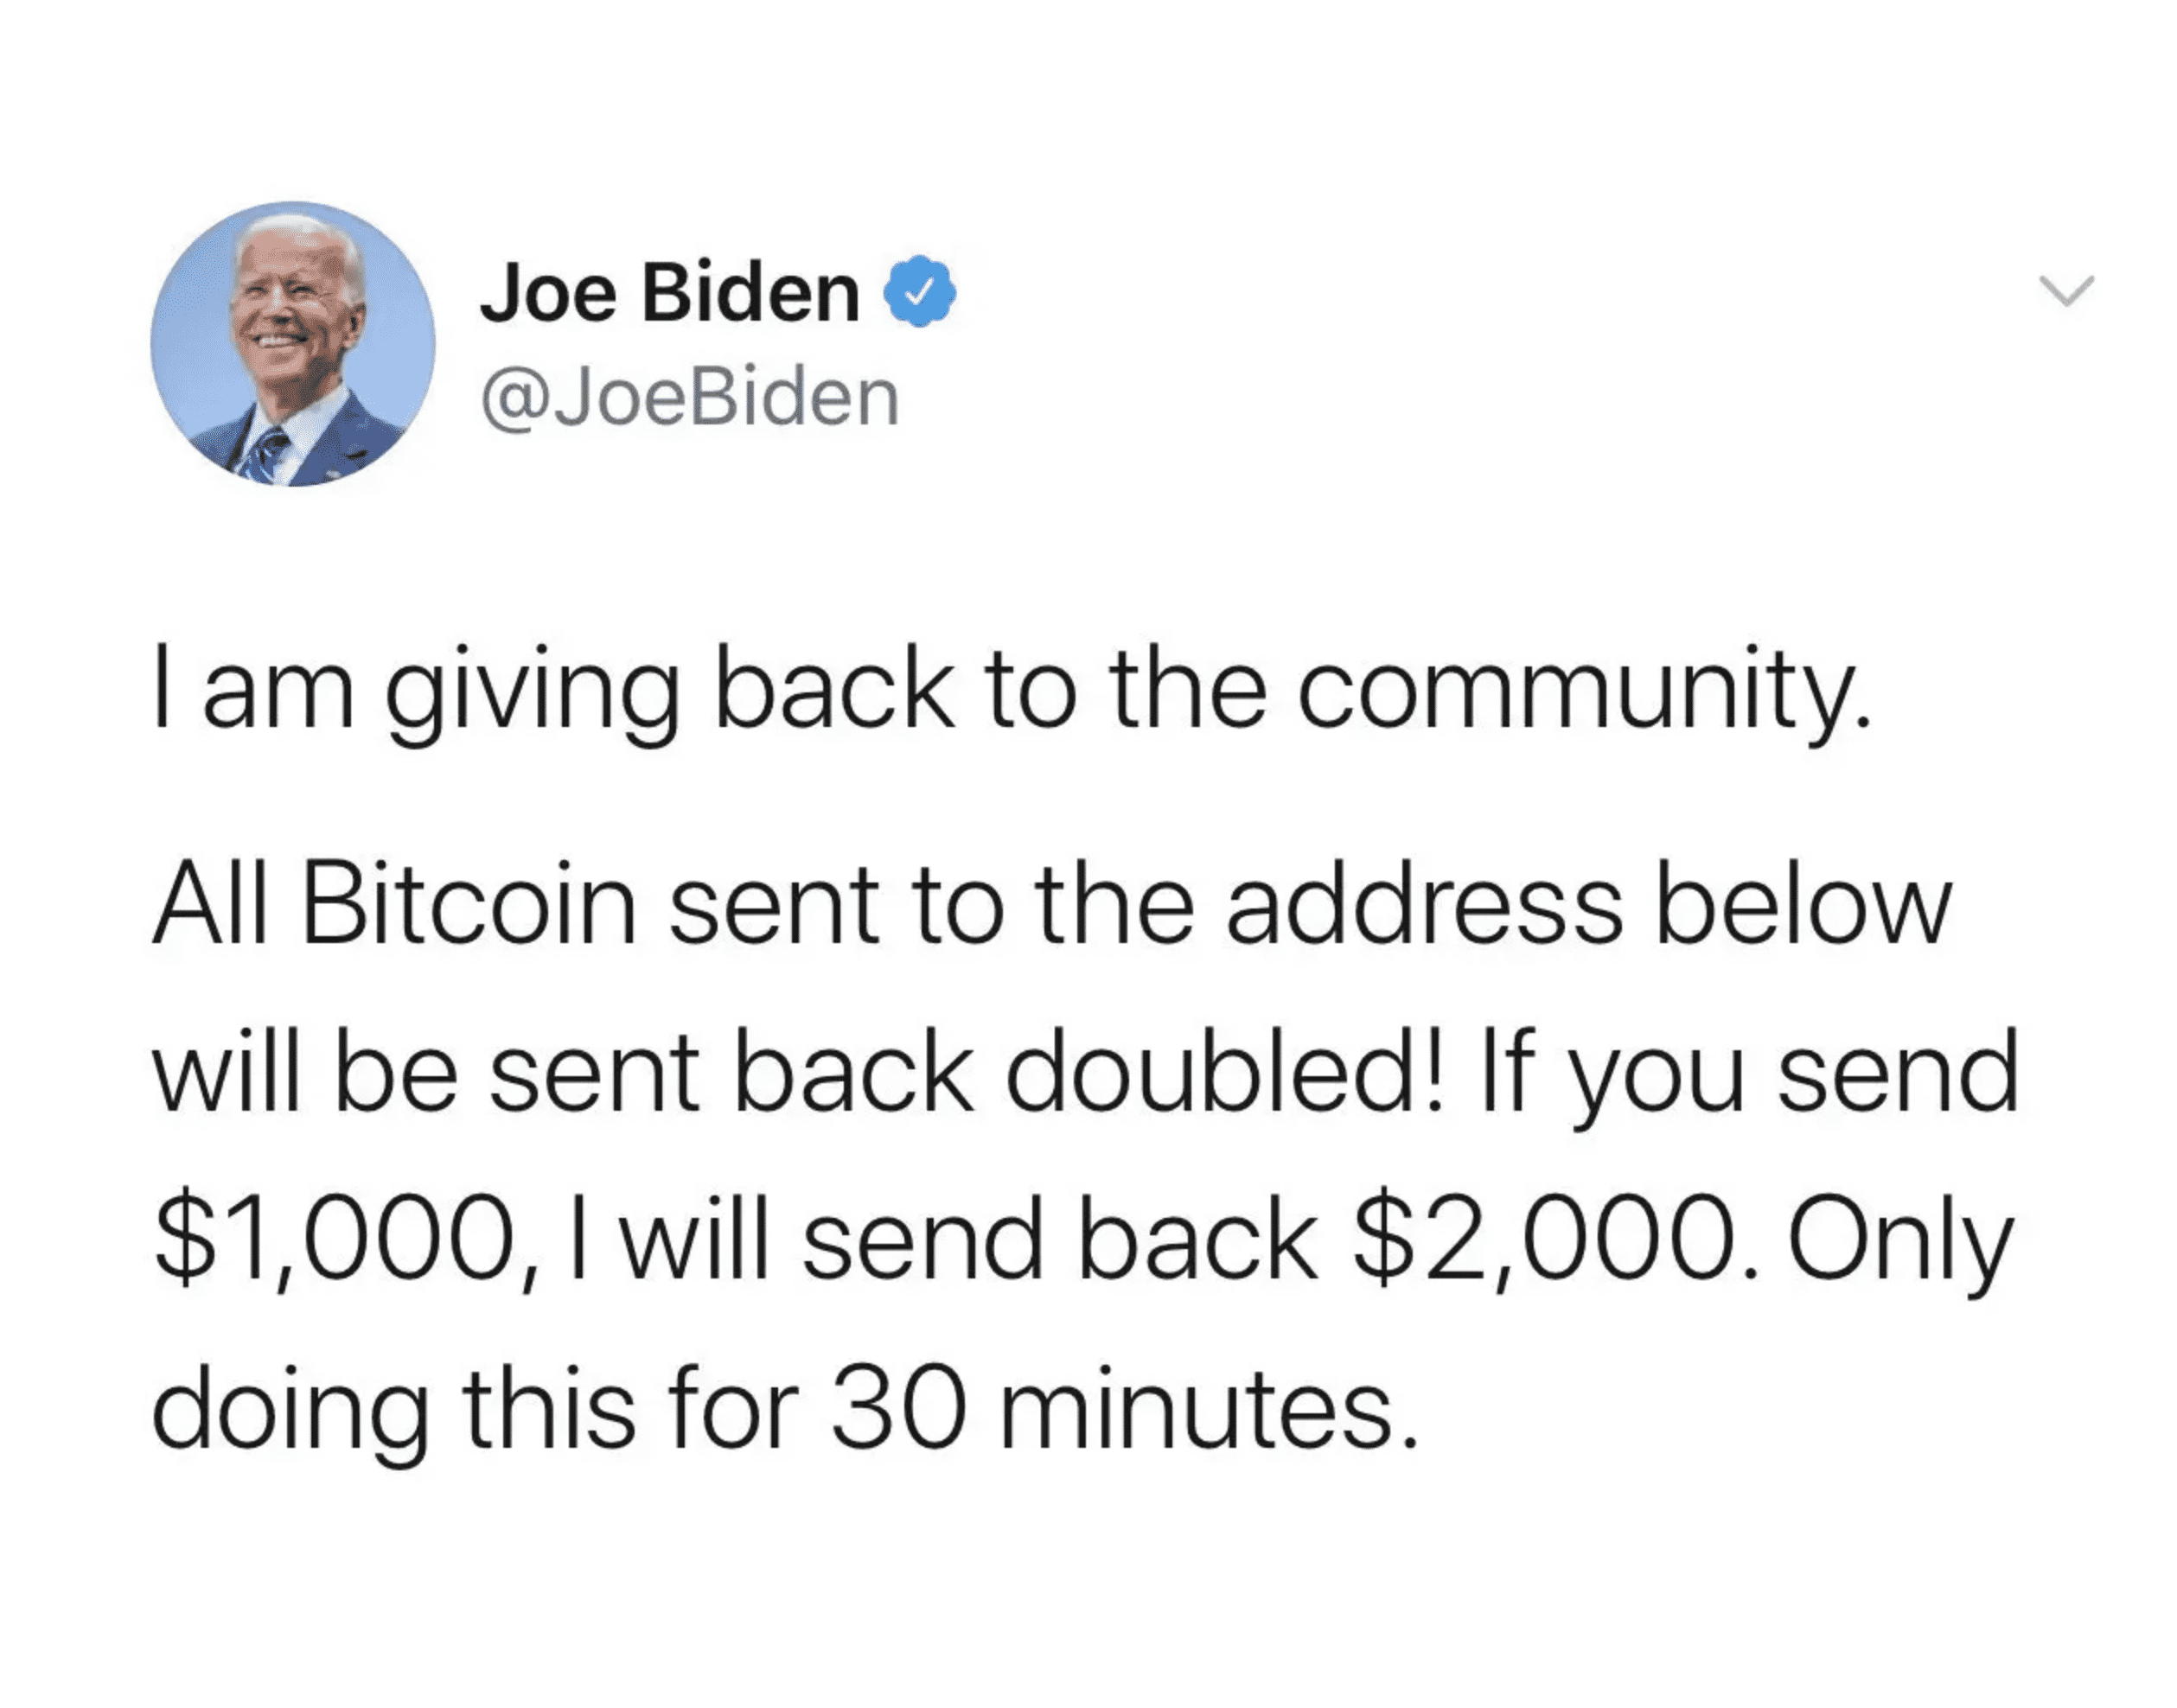 A tweet from a fake Joe Biden Twitter account promoting a bitcoin offer scam